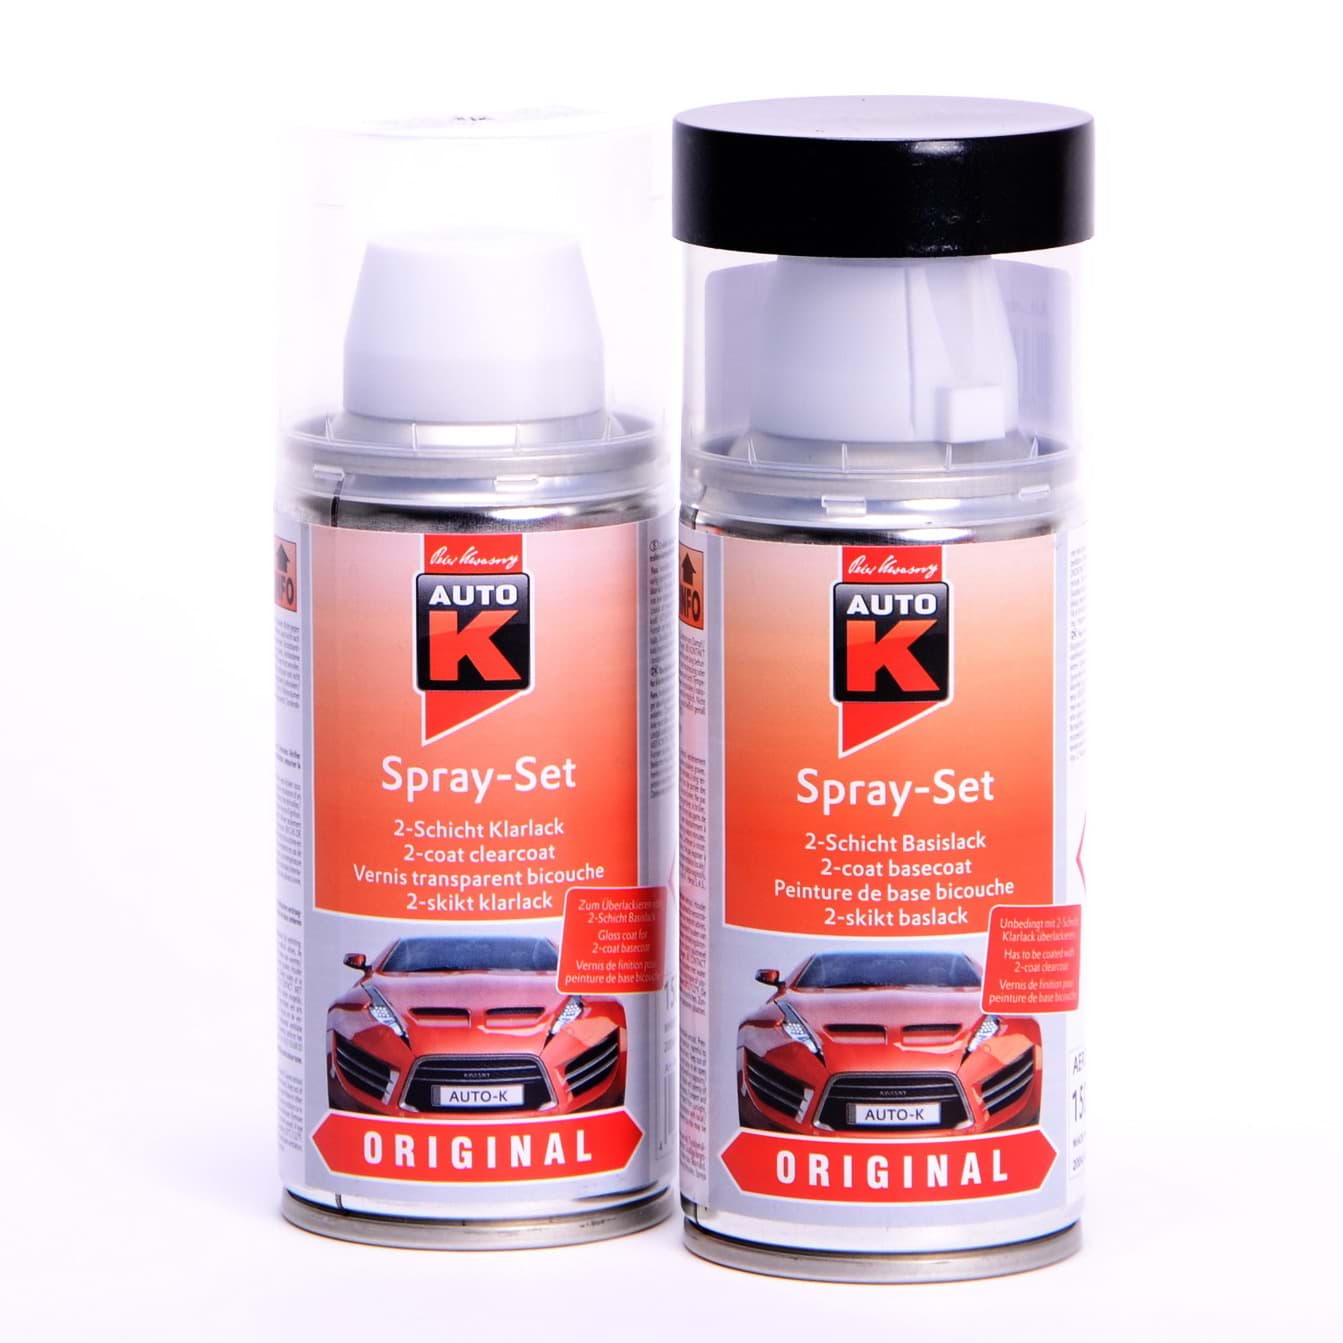 Afbeelding van Auto-K Spray-Set Autolack für Volkswagen, VW, Audi LD7X Platinumgrey met 20956 